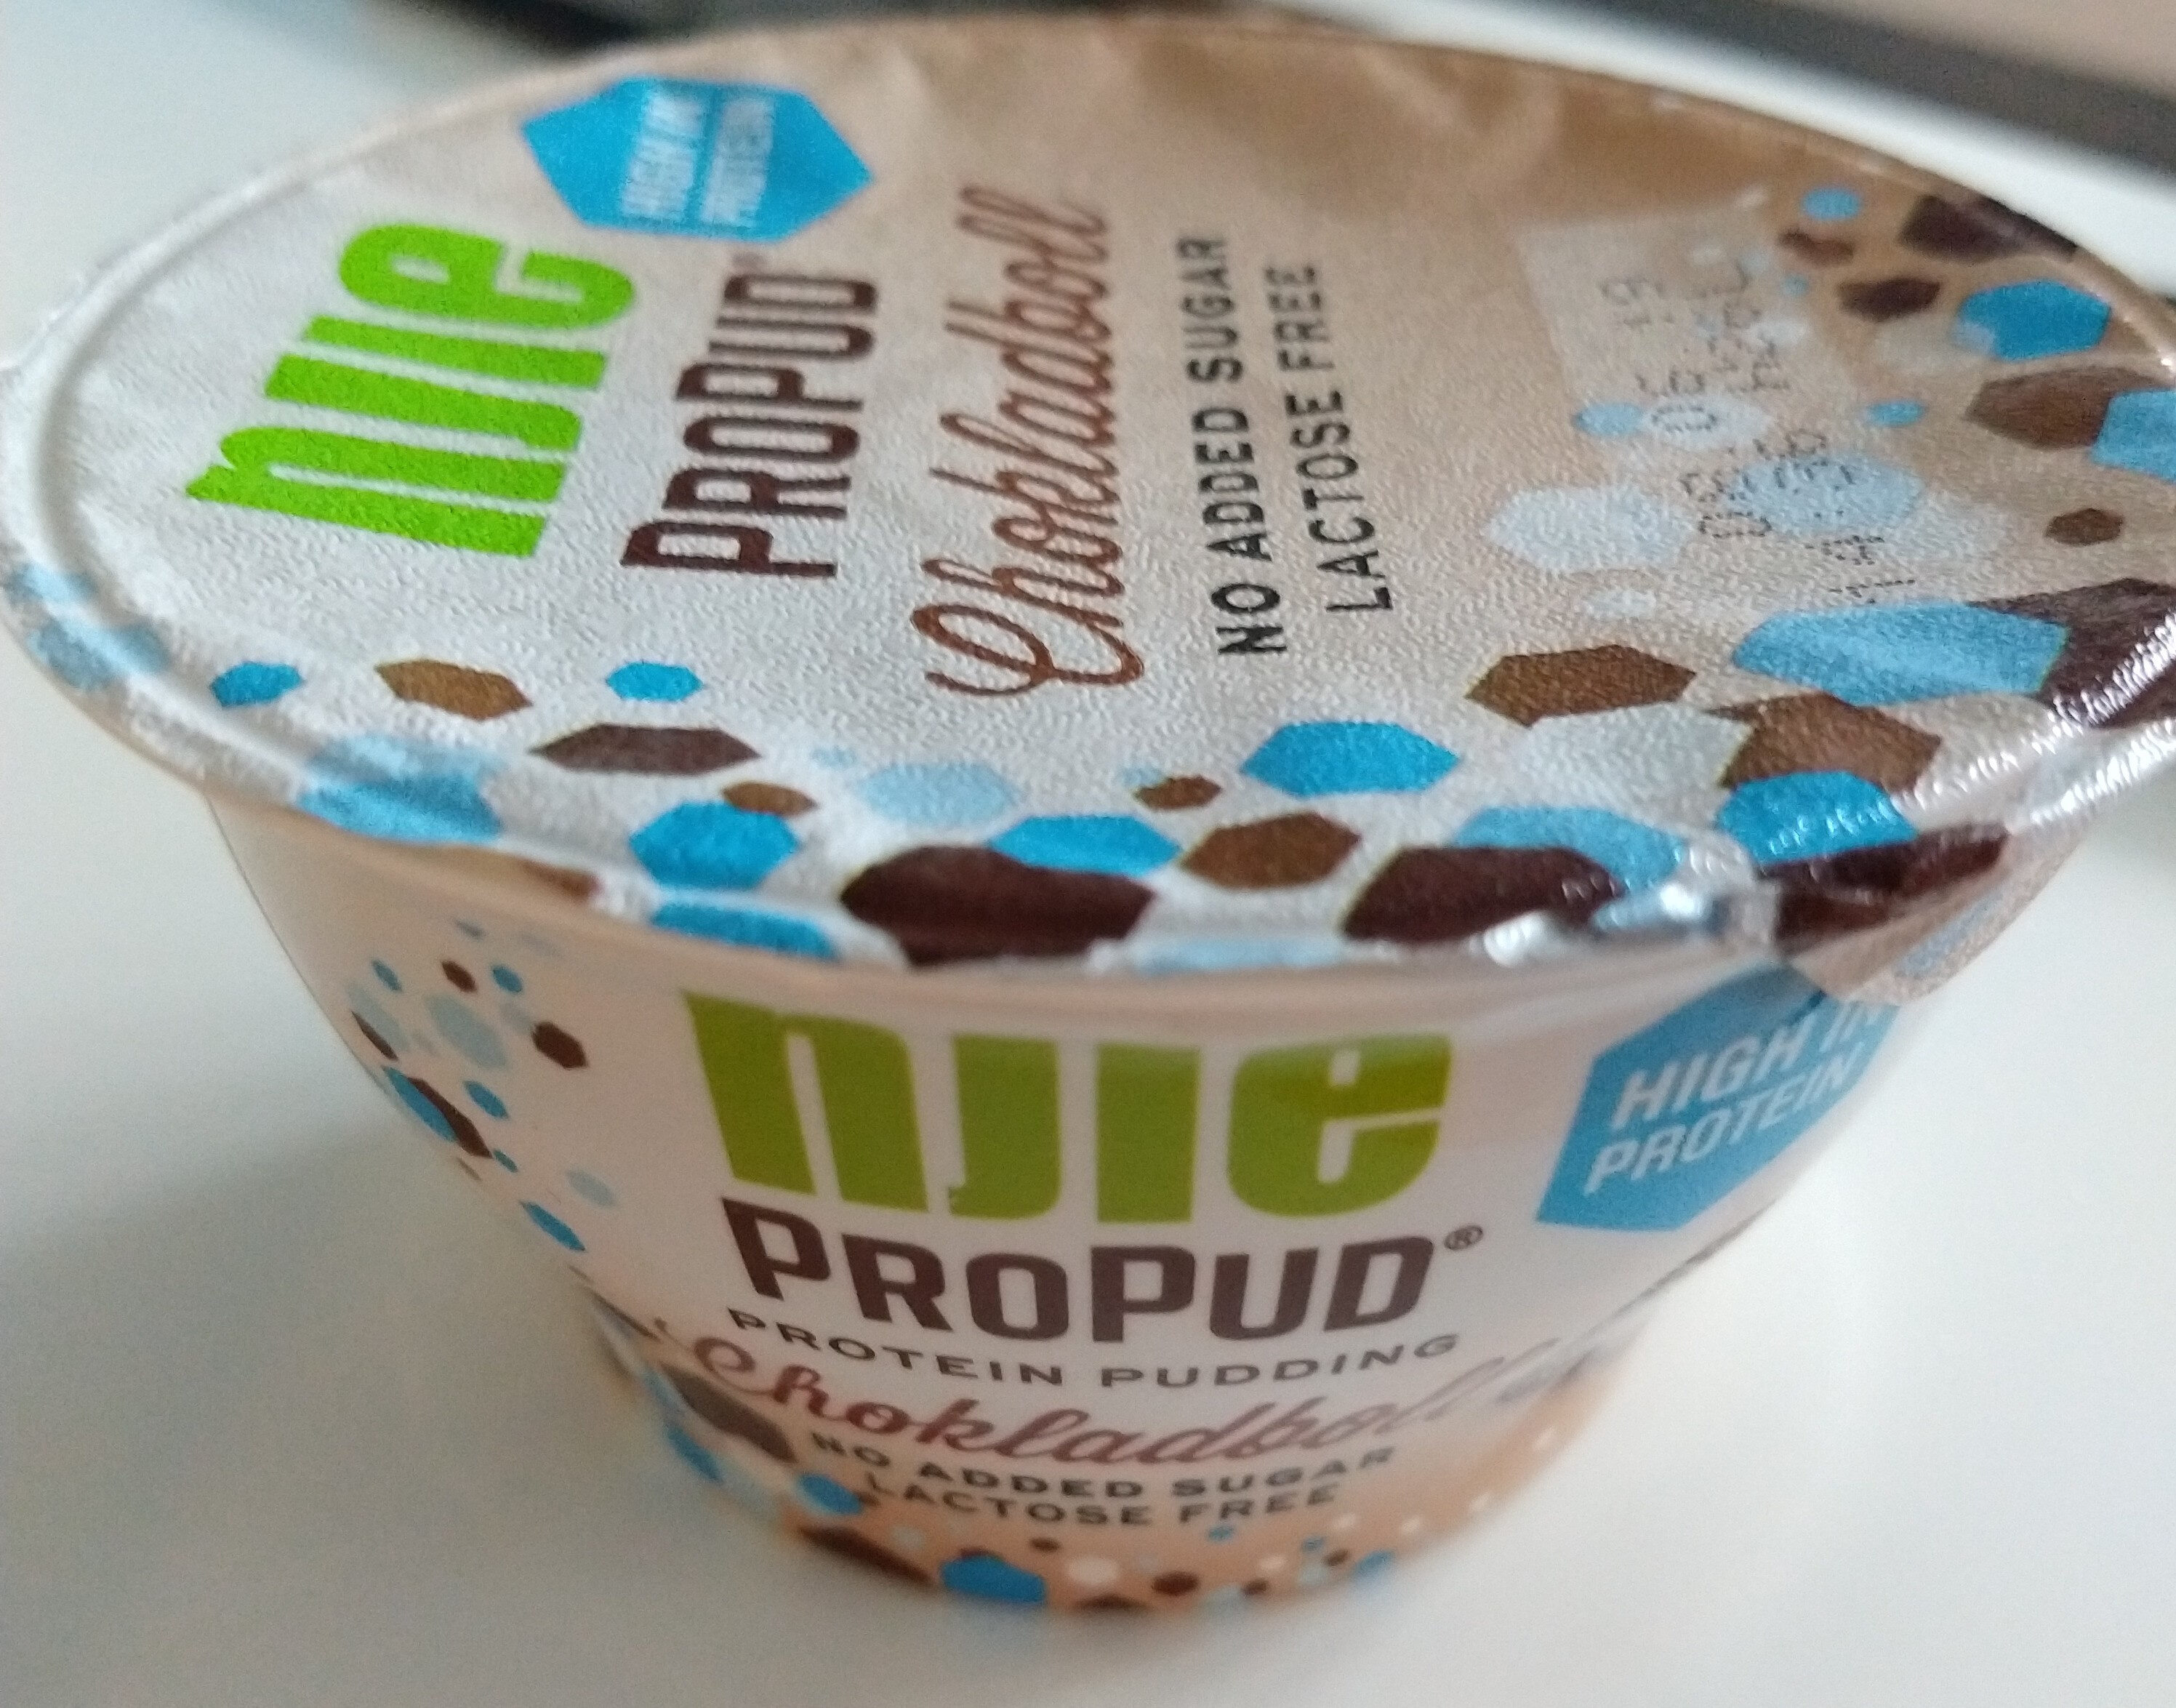 ProPud chokladboll - Produkt - en